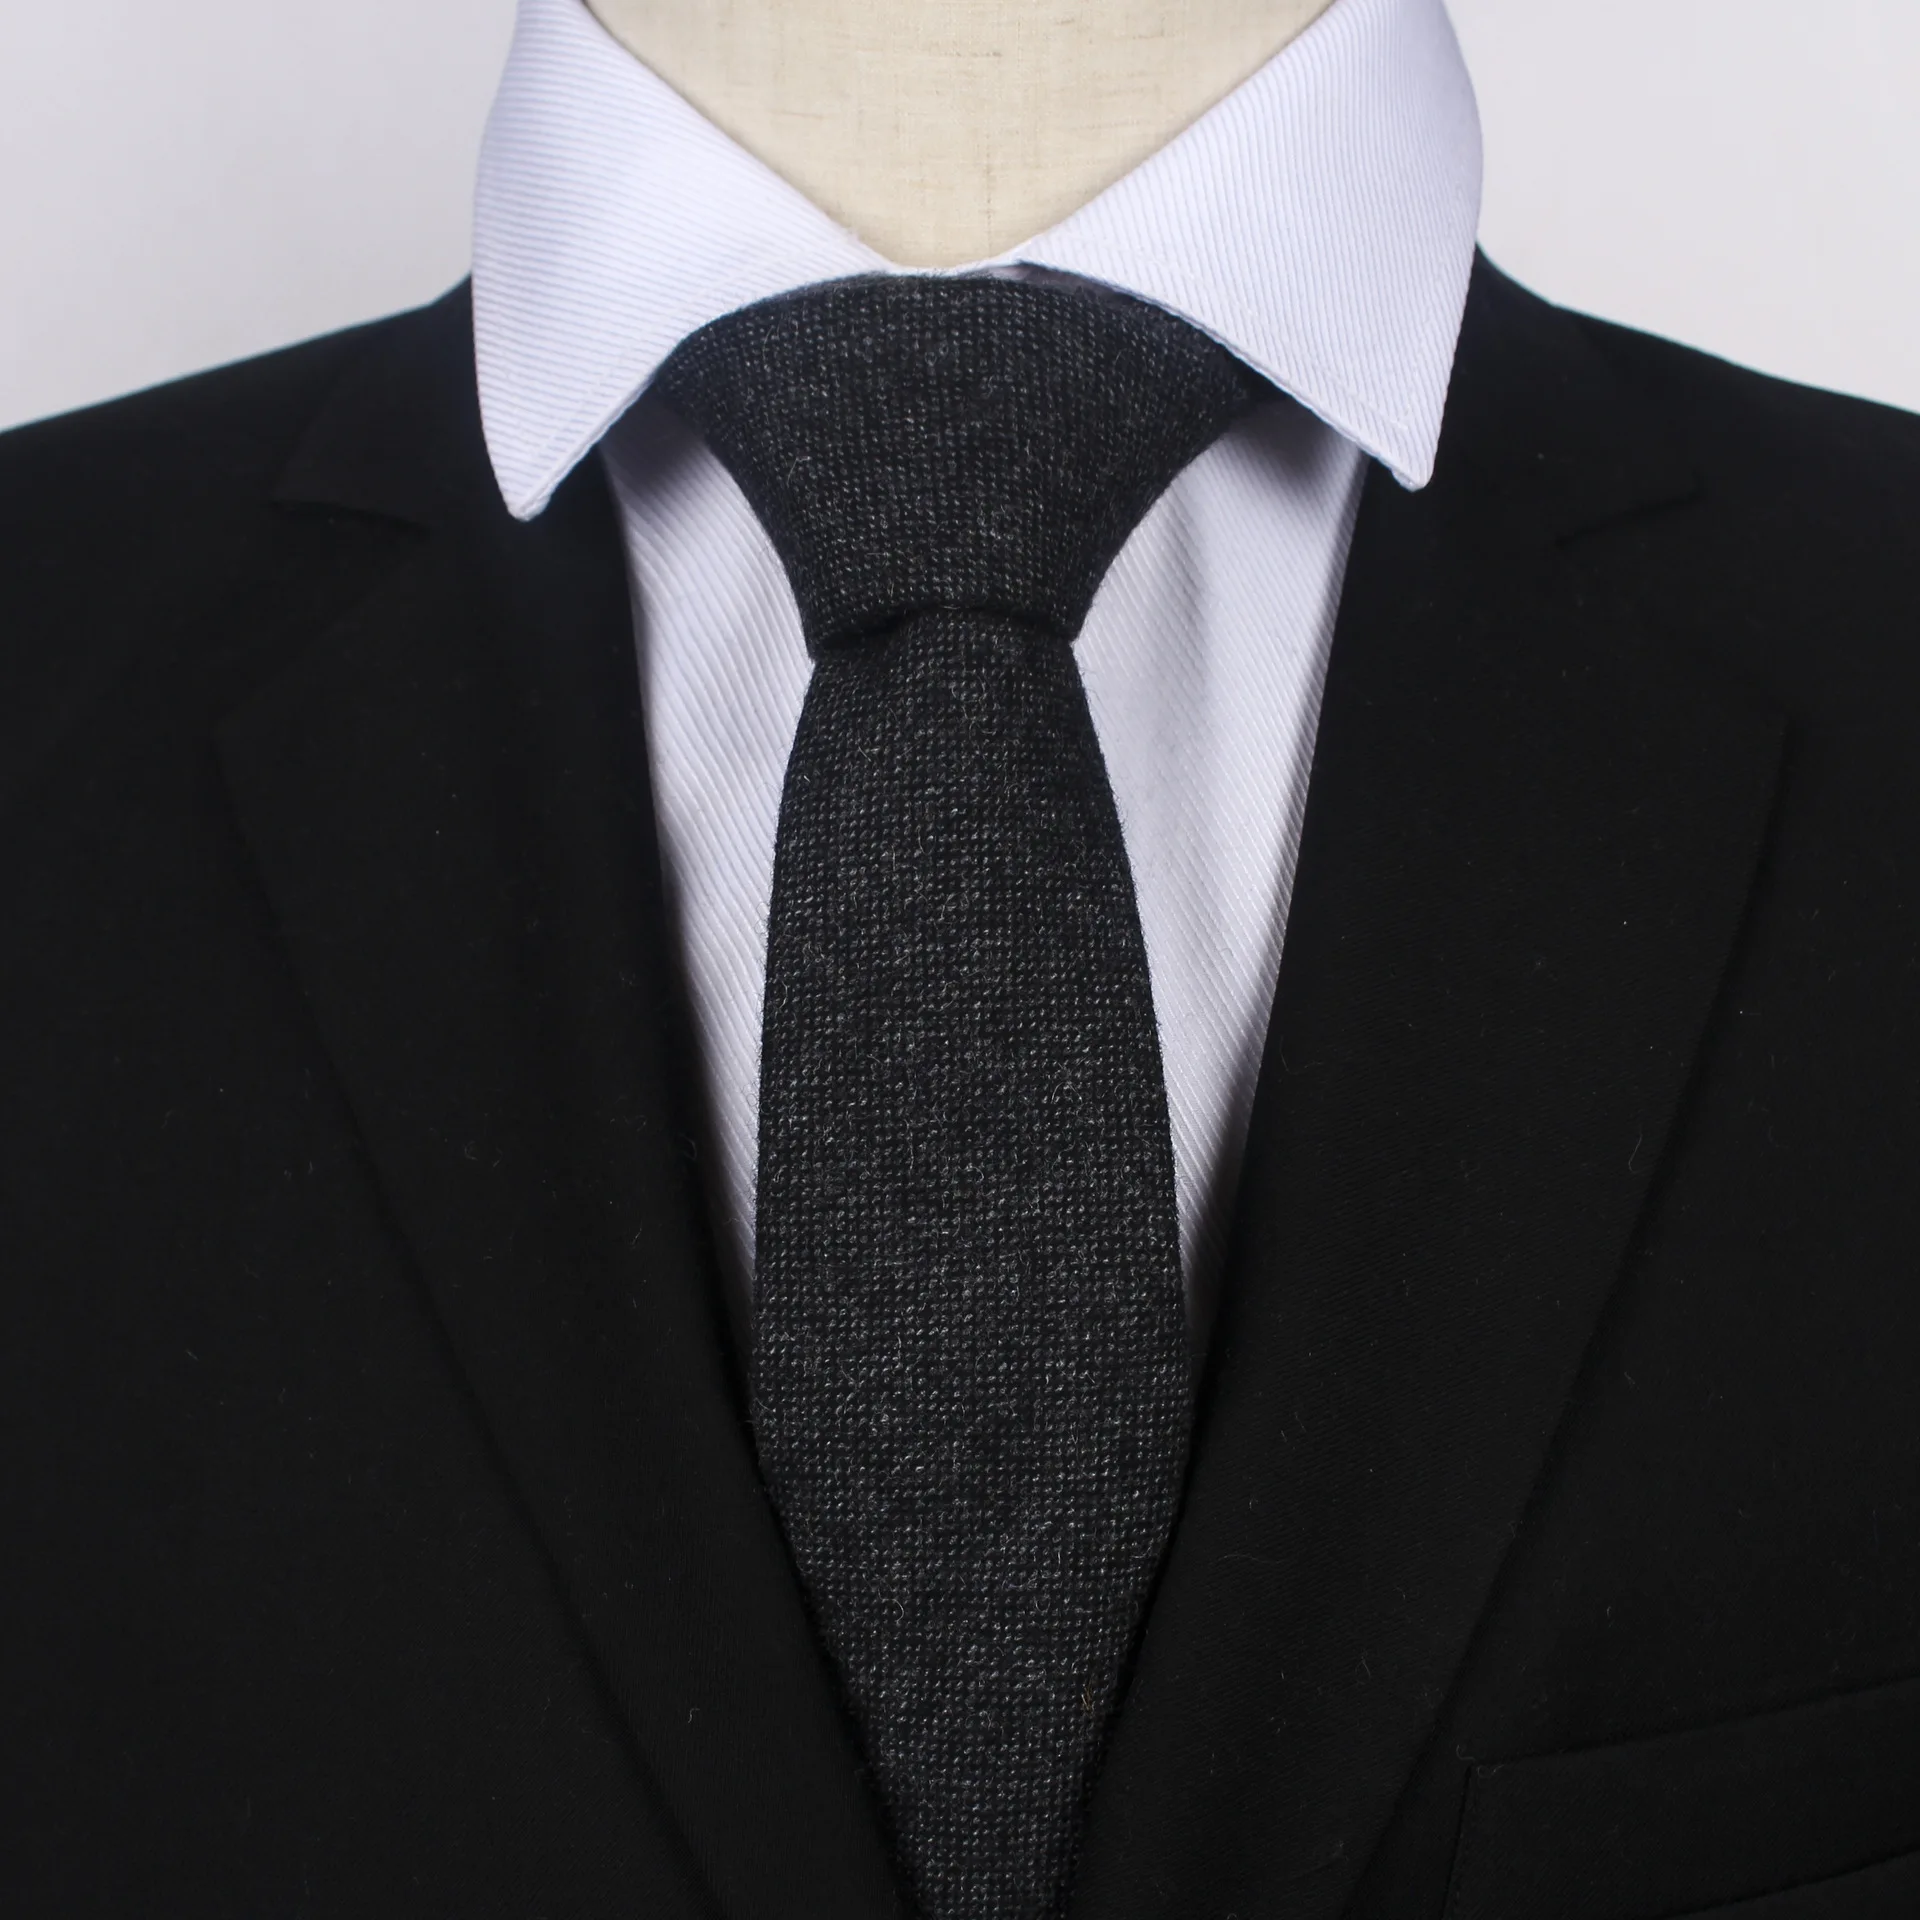 Аксессуары для одежды галстуки мужские шерсть 6,0 см широкие клетчатые Хаундстут модные галстуки для взрослых пряжа-краситель Геометрическая Шея галстук для мальчиков и девочек - Цвет: Plain WT001-A